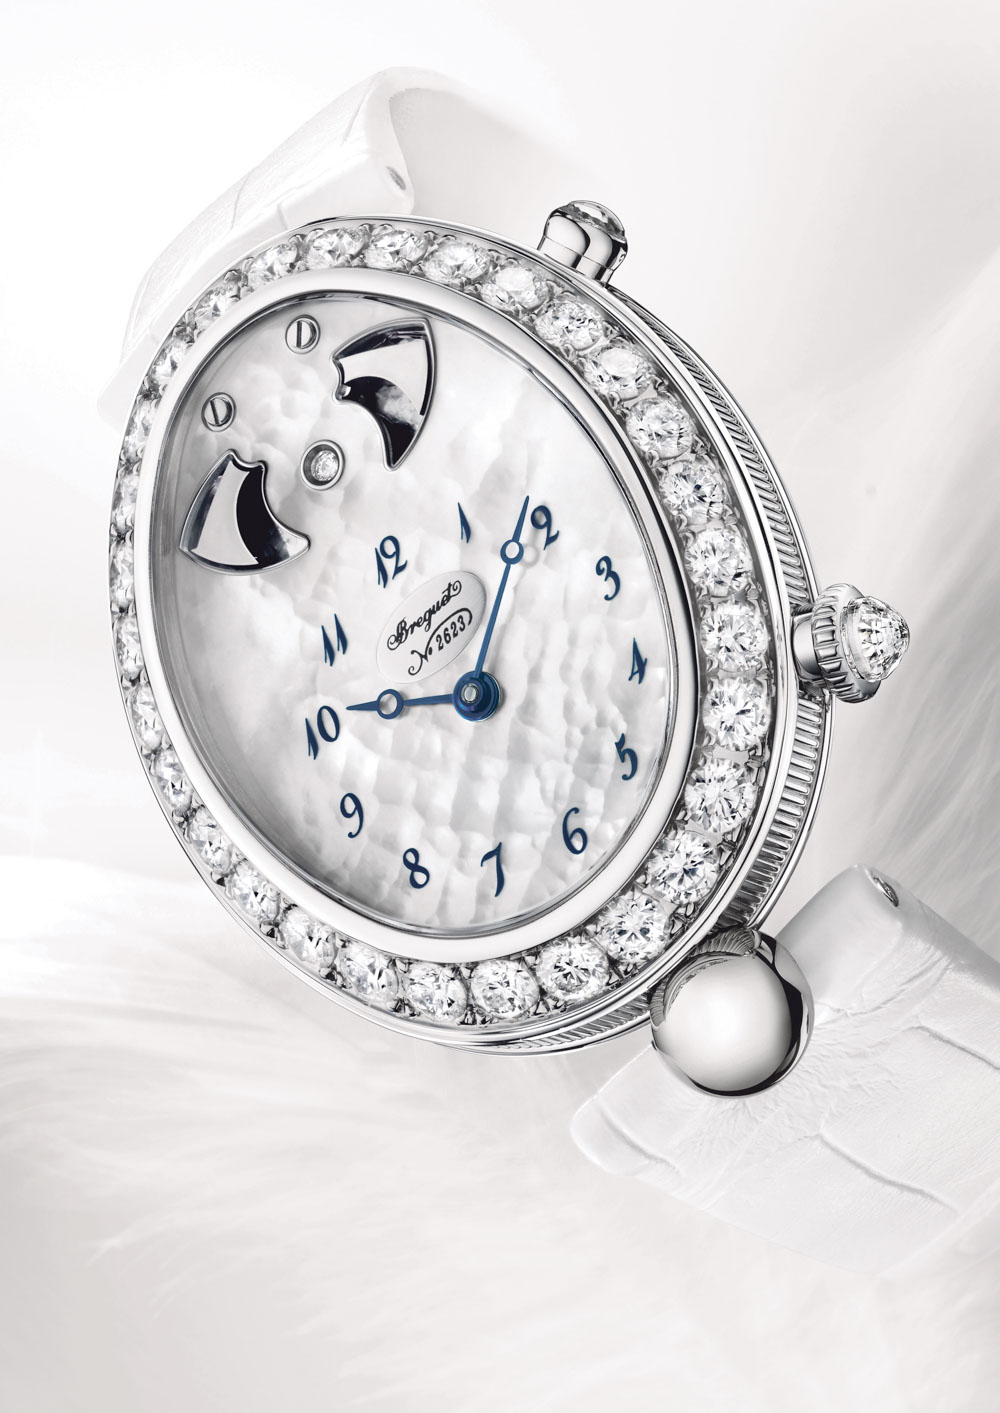 breguet-manufacture-visit-watch-making-guilloche-ablogtowatch-5